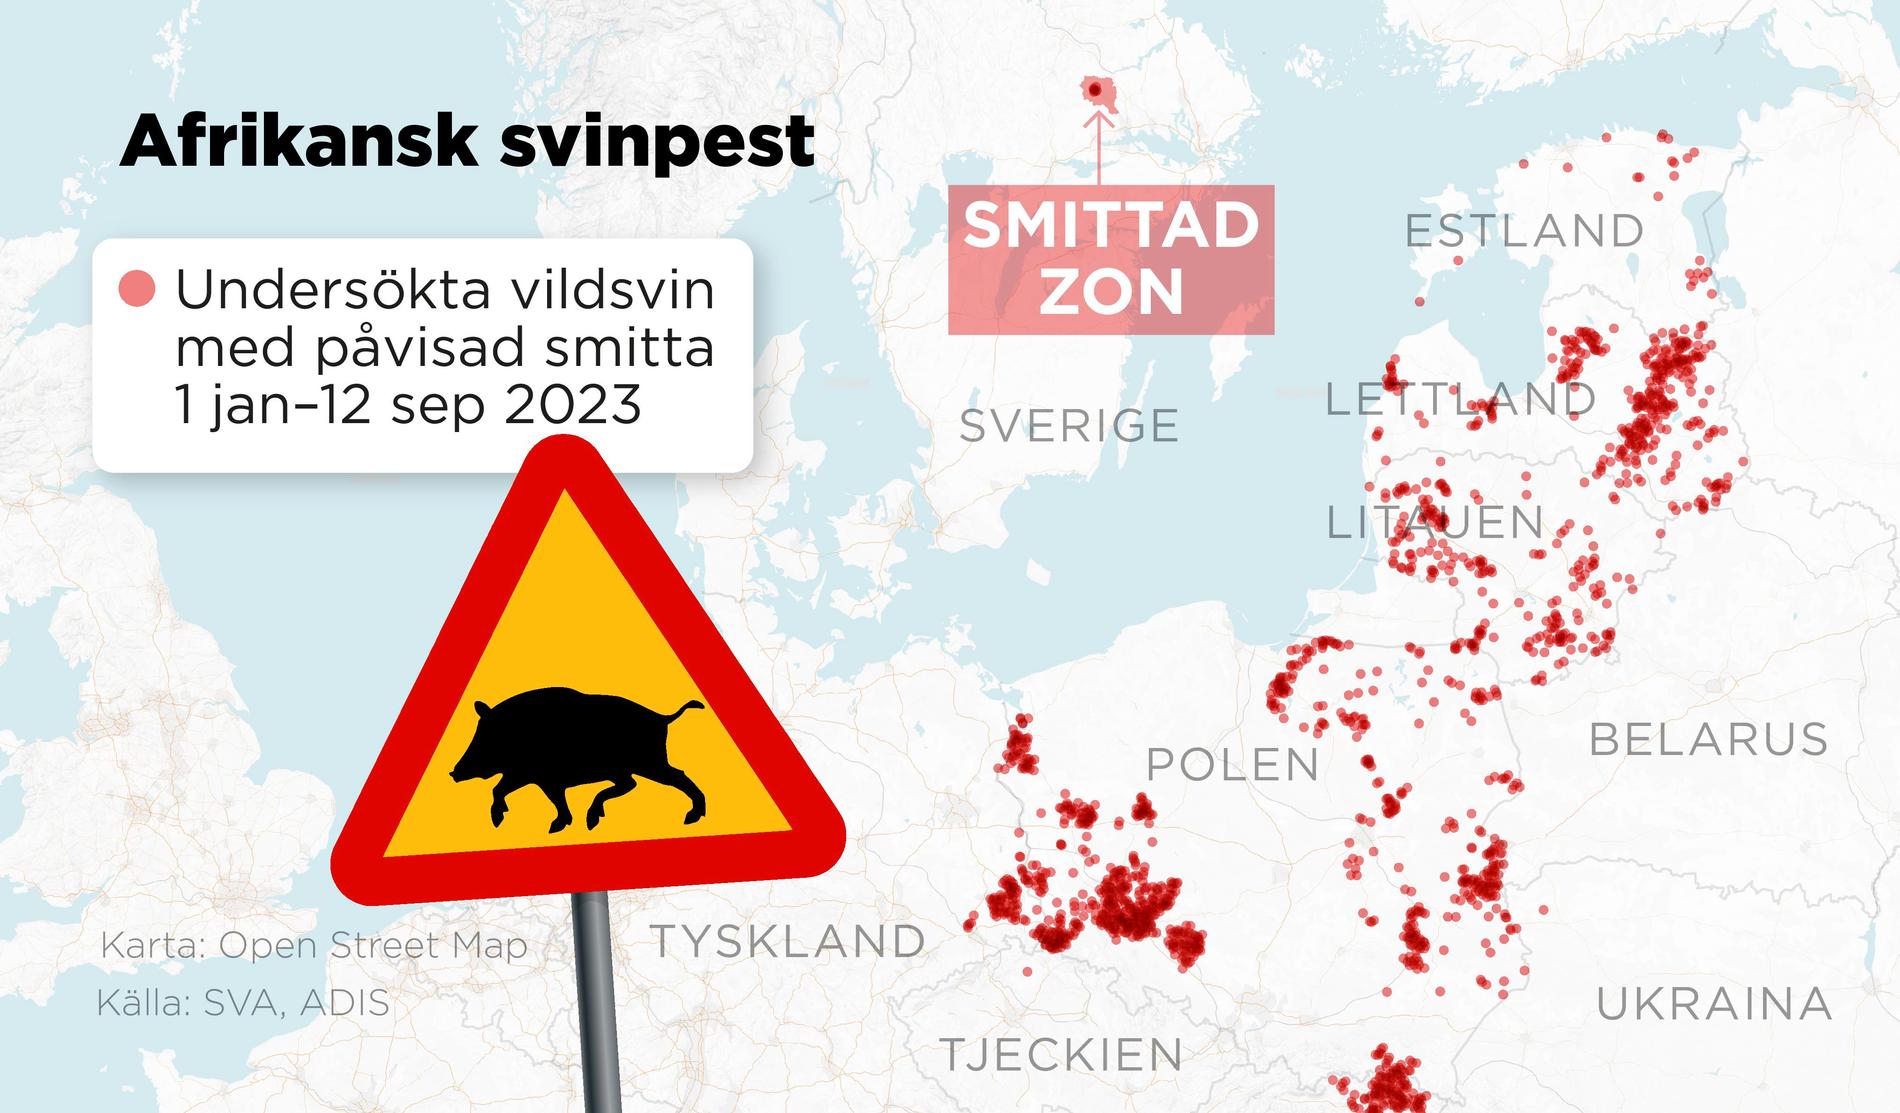 Kartan visar var undersökta vildsvin som påvisats vara smittade av afrikansk svinpest hittats under perioden 1 januari–12 september 2023.